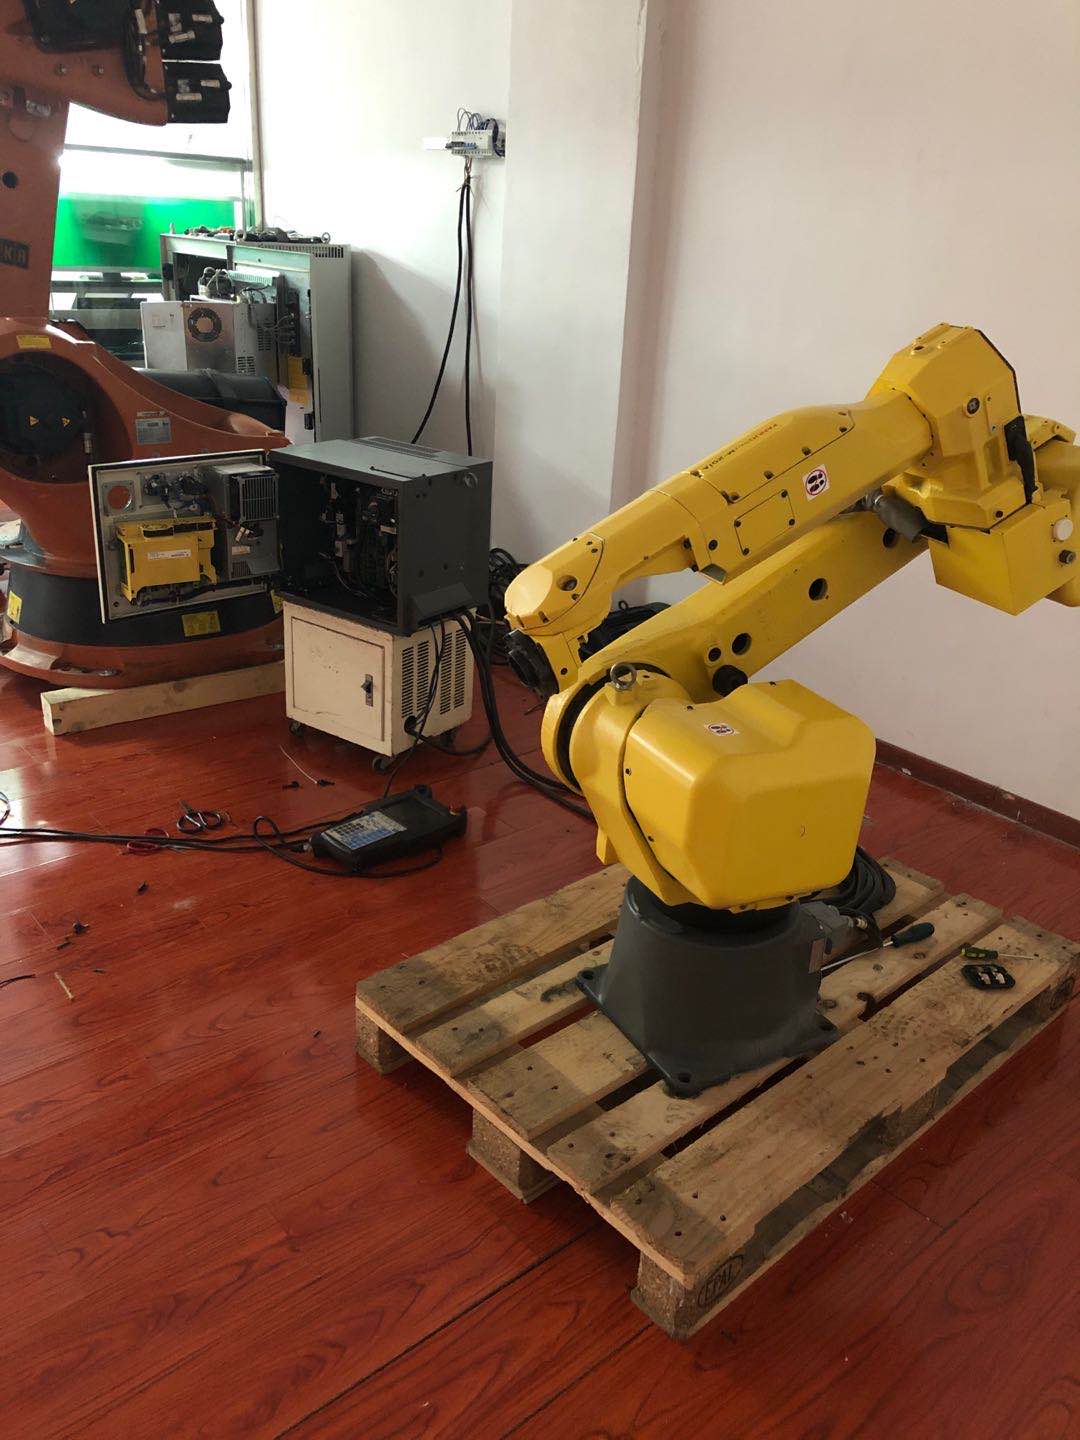 苏州安yaskawa机器人芯片级维修，安川伺服电机维修 机器人驱动器修复率90%以上安川机器人上错电维修